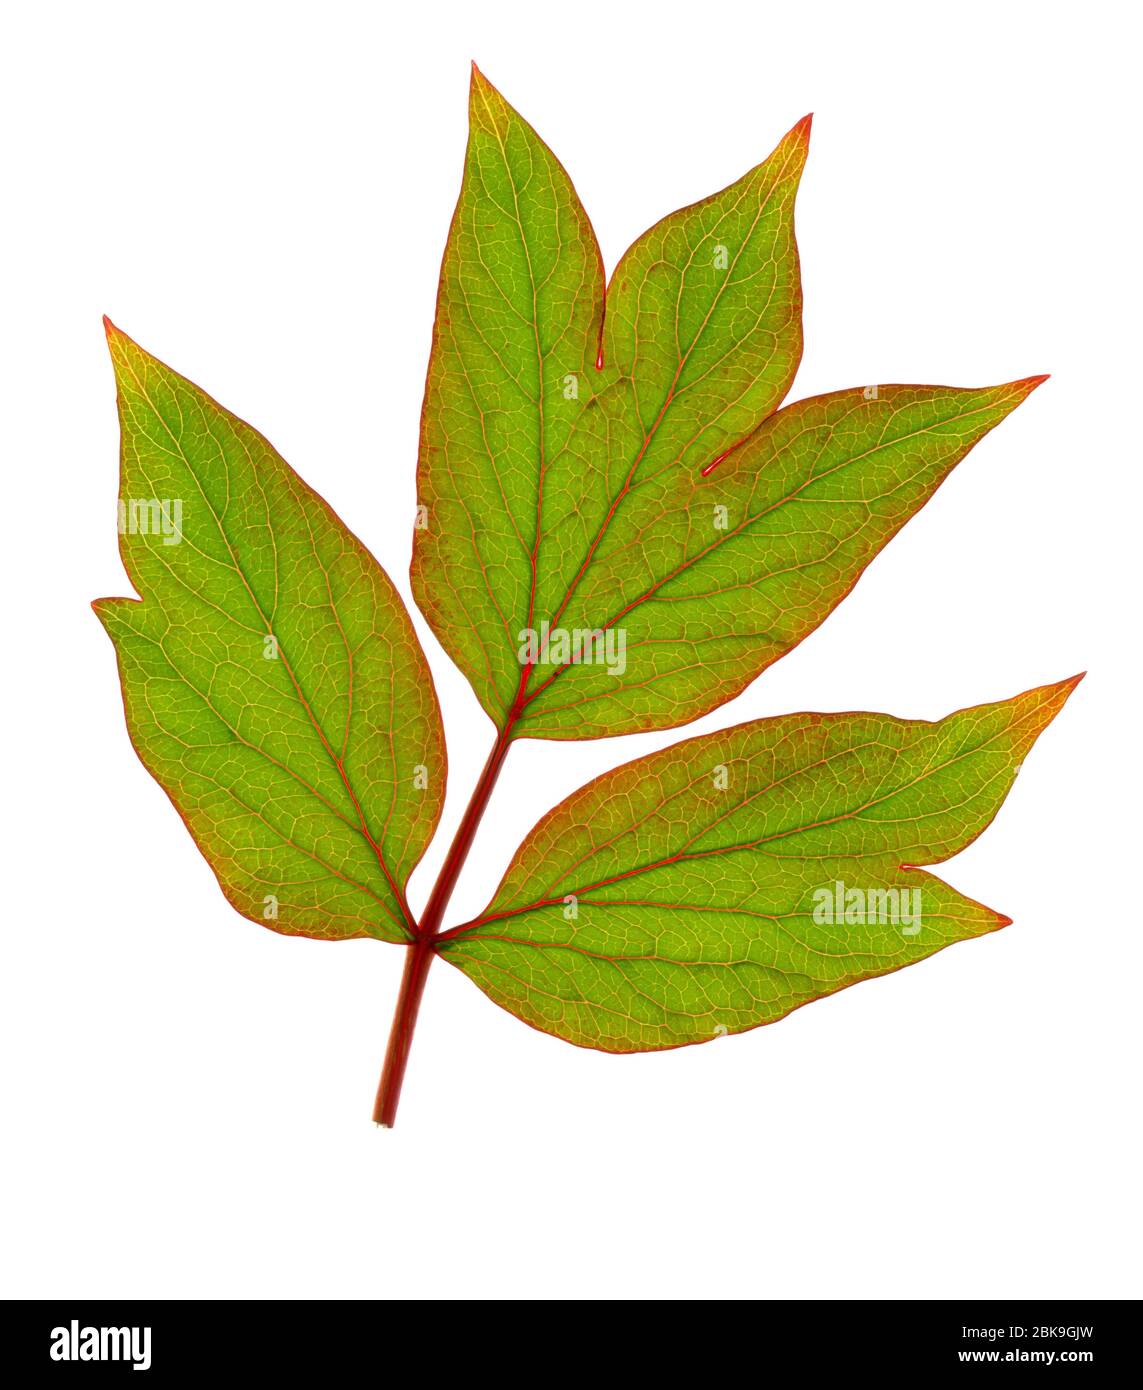 Tree peony leaf (Paeonia suffruticosa), France Stock Photo